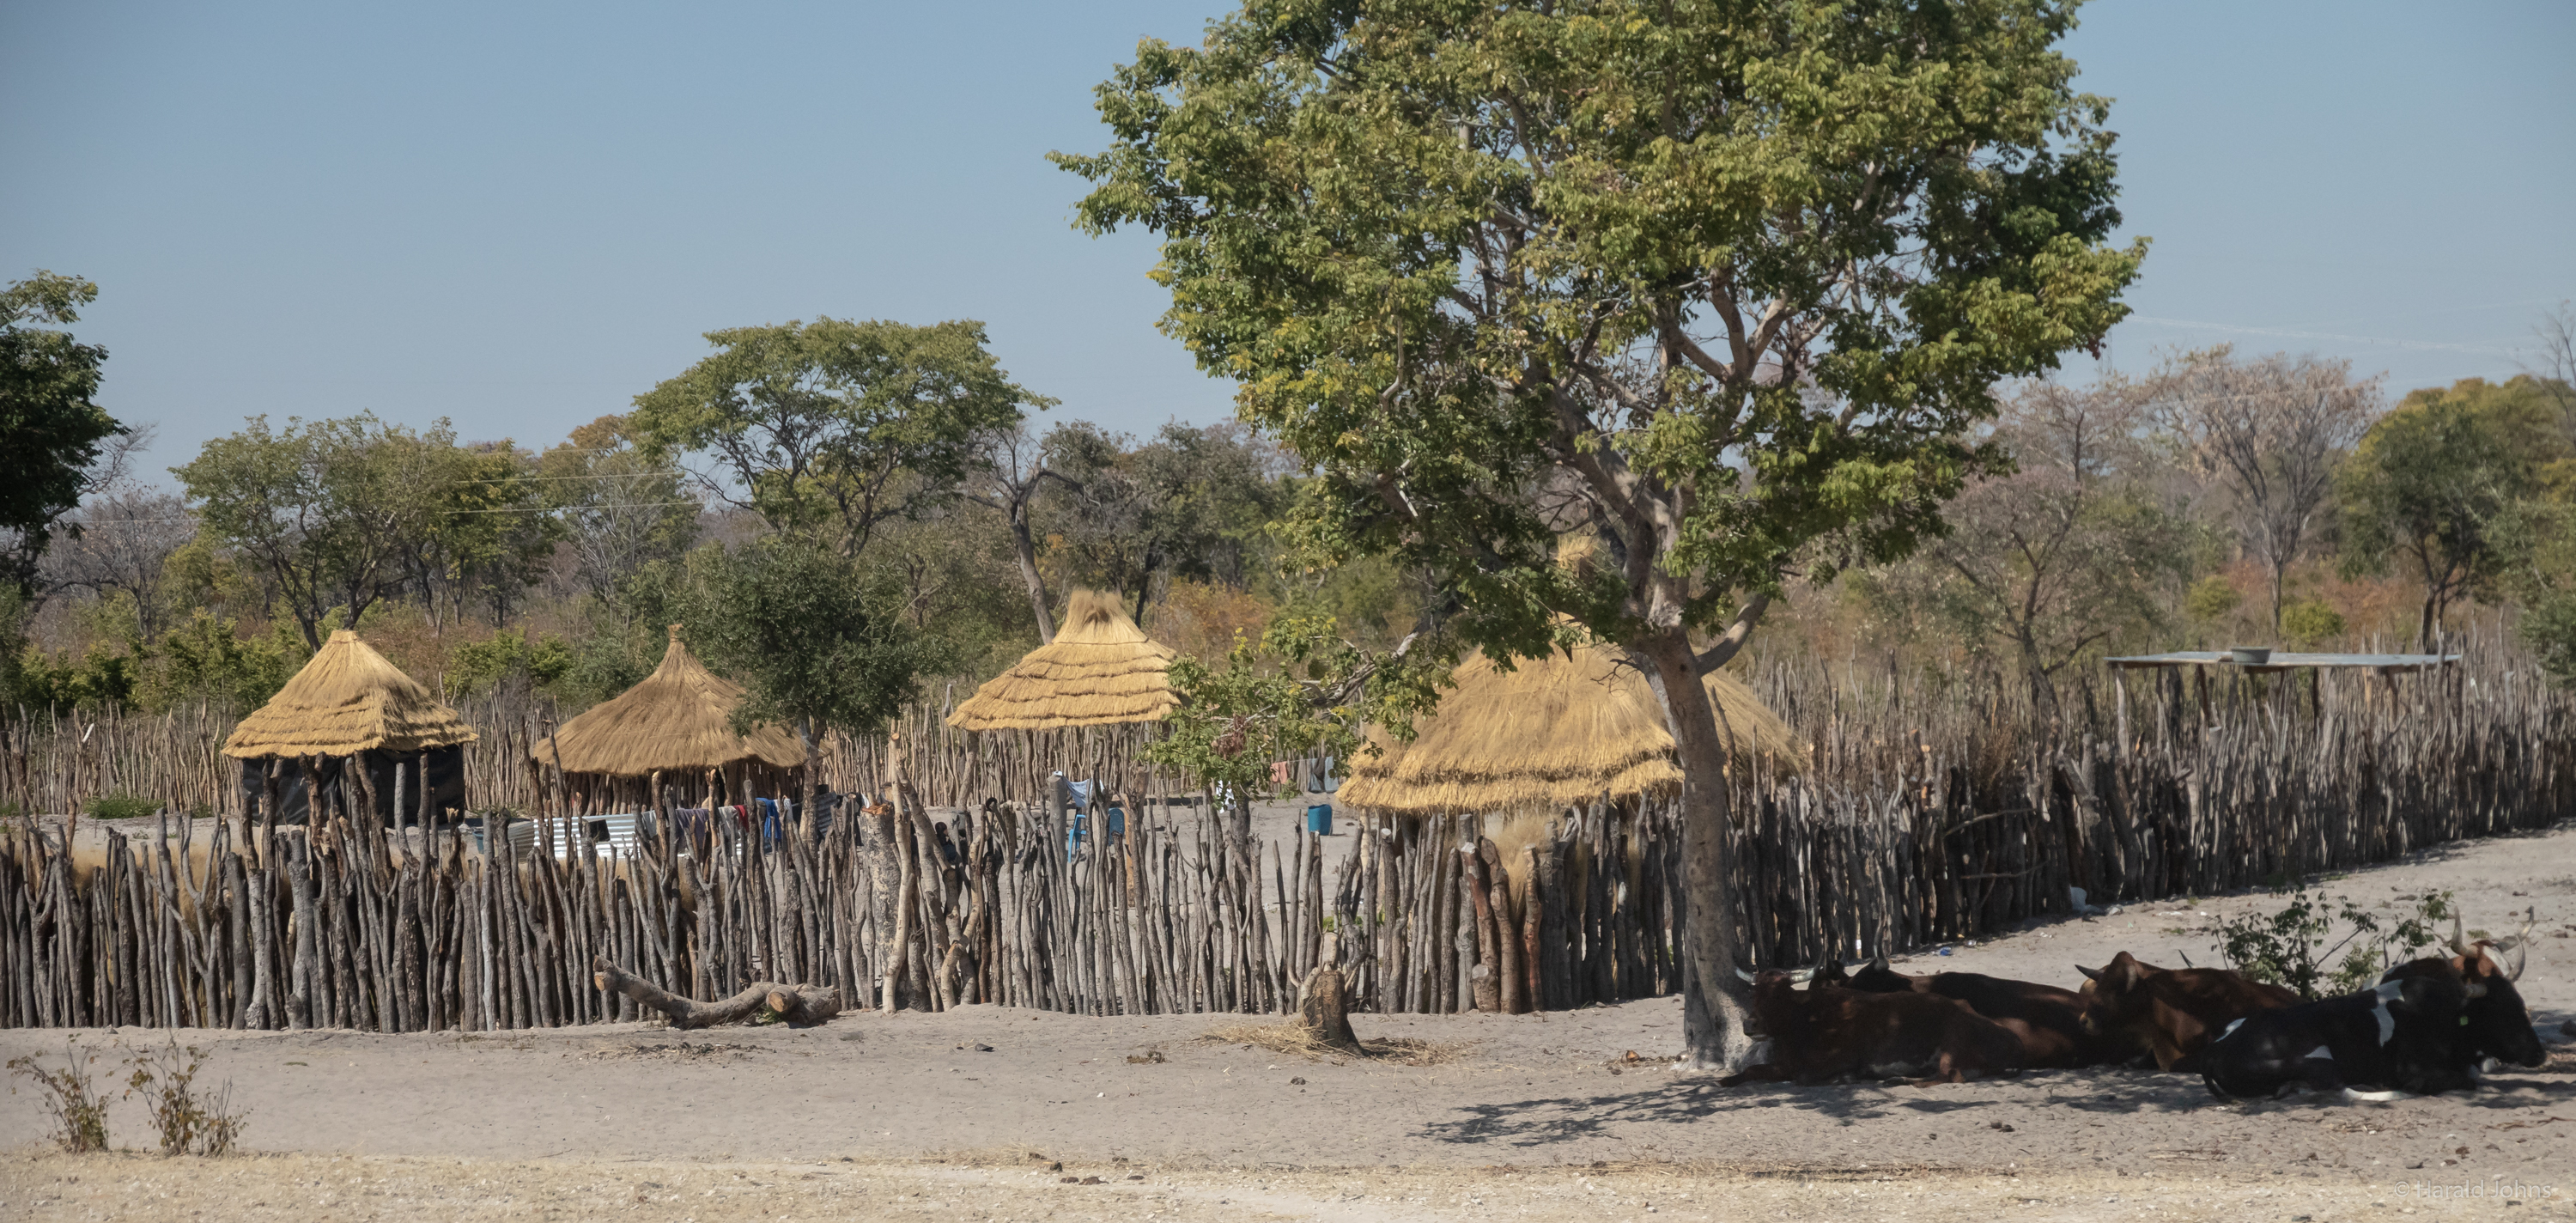 Siedlung mit Viehherde - Region Kavango-Ost bei Rundu